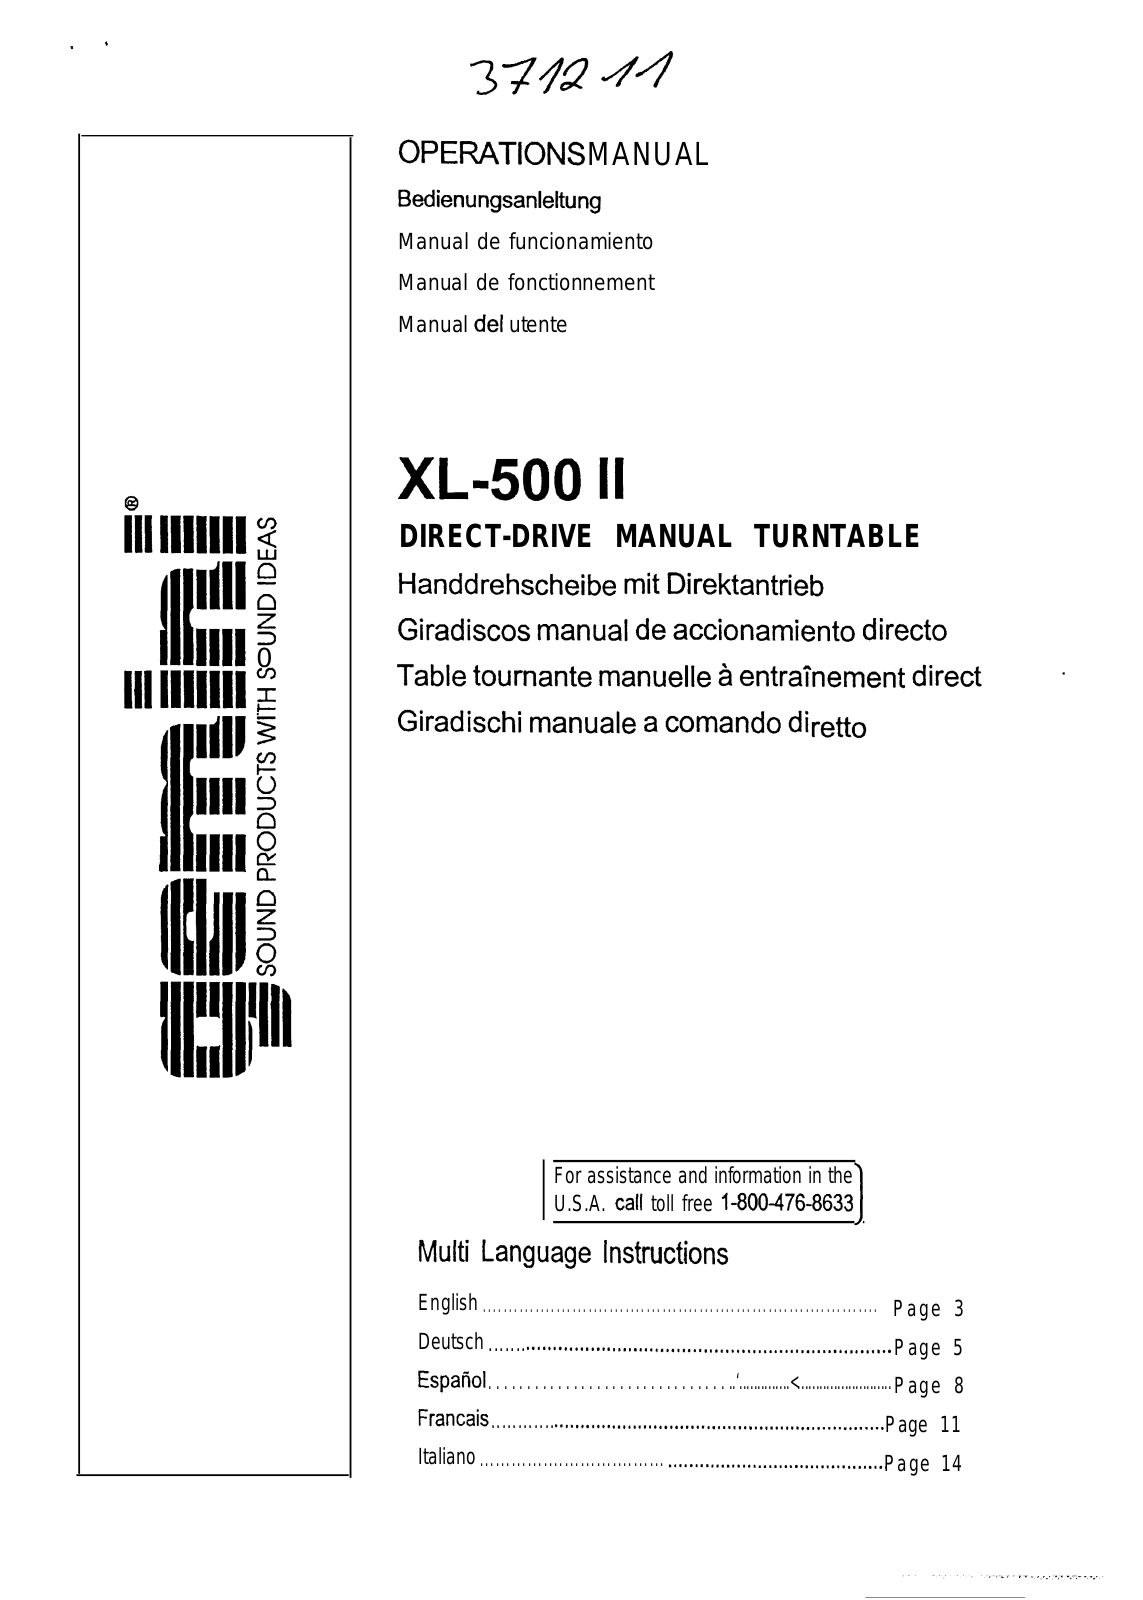 Gemini XL-500 II User Manual